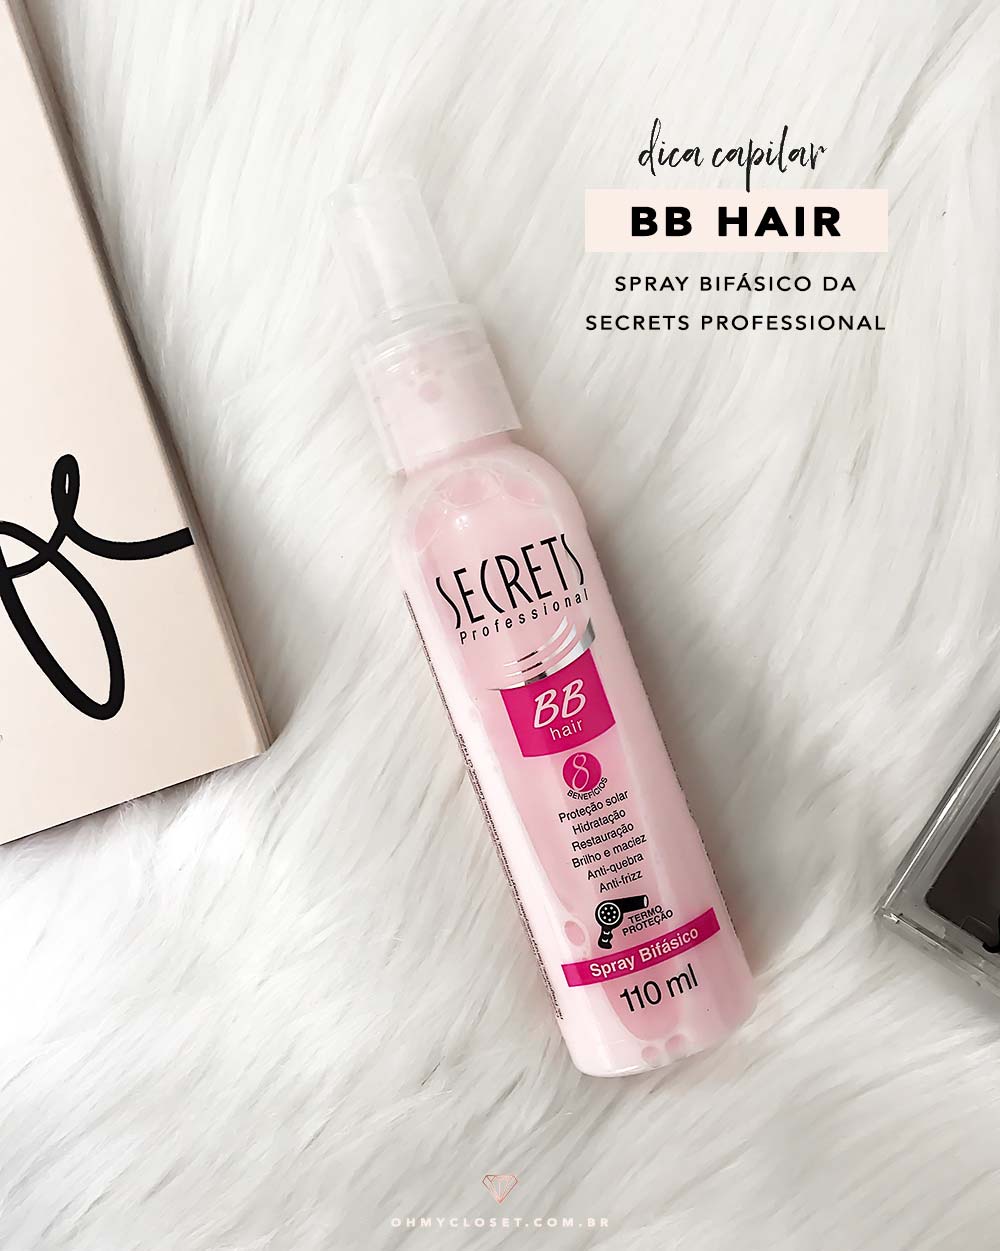 Dica de termo protetor: spray bifásico BB Hair da Secrets Professional.